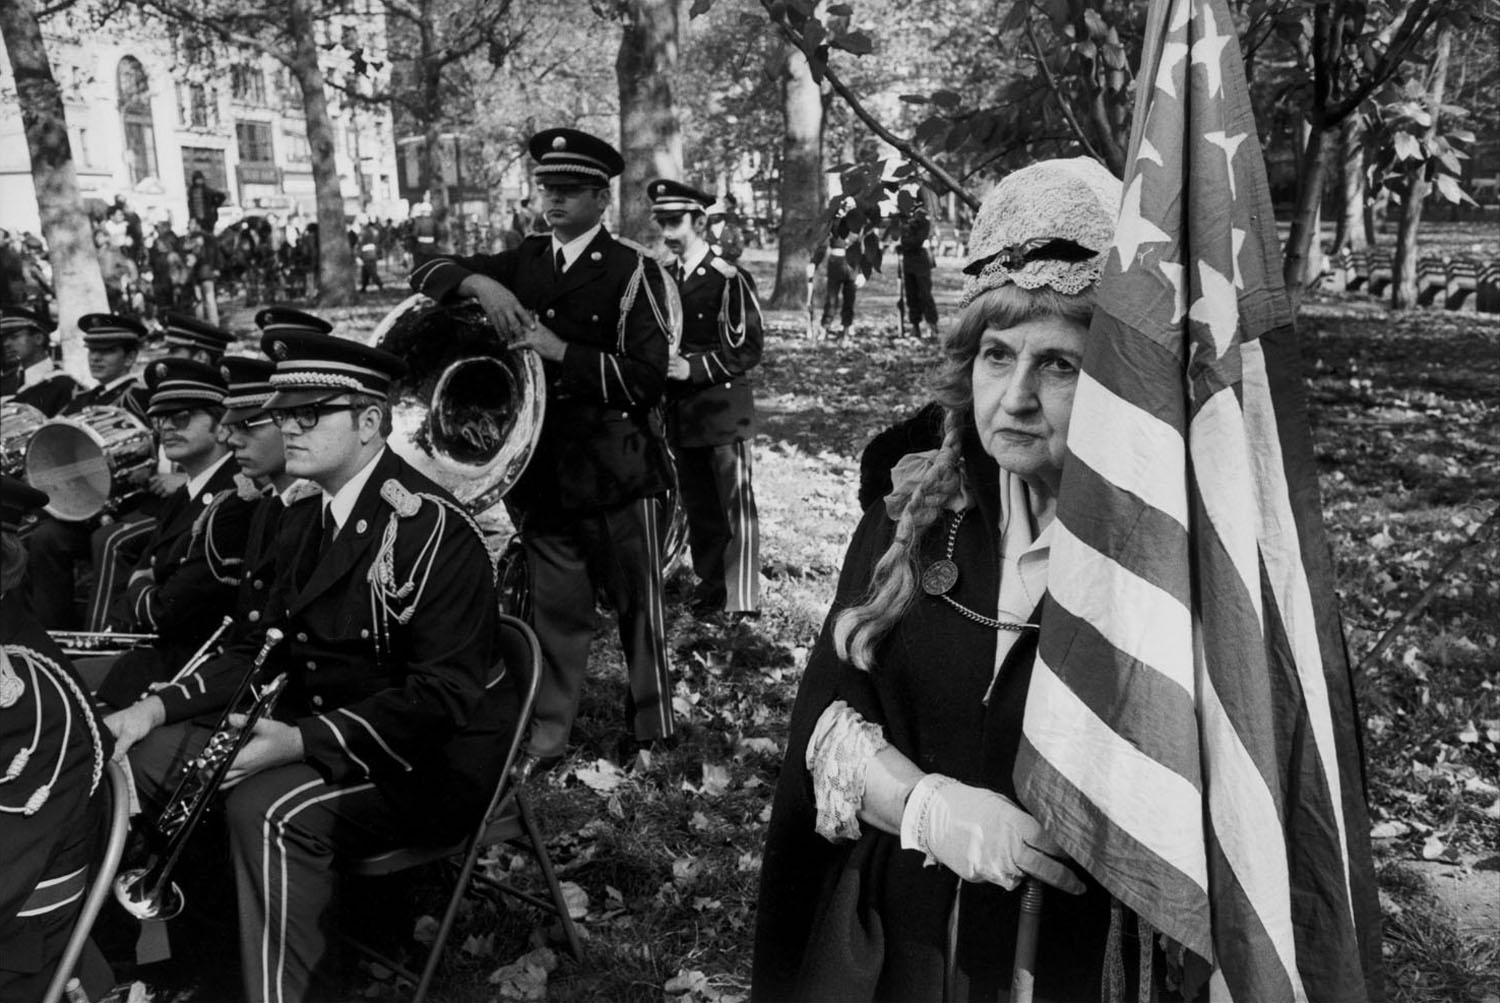 Veterans' parade, commemorating the armistice, New York City, Nov. 11, 1974.